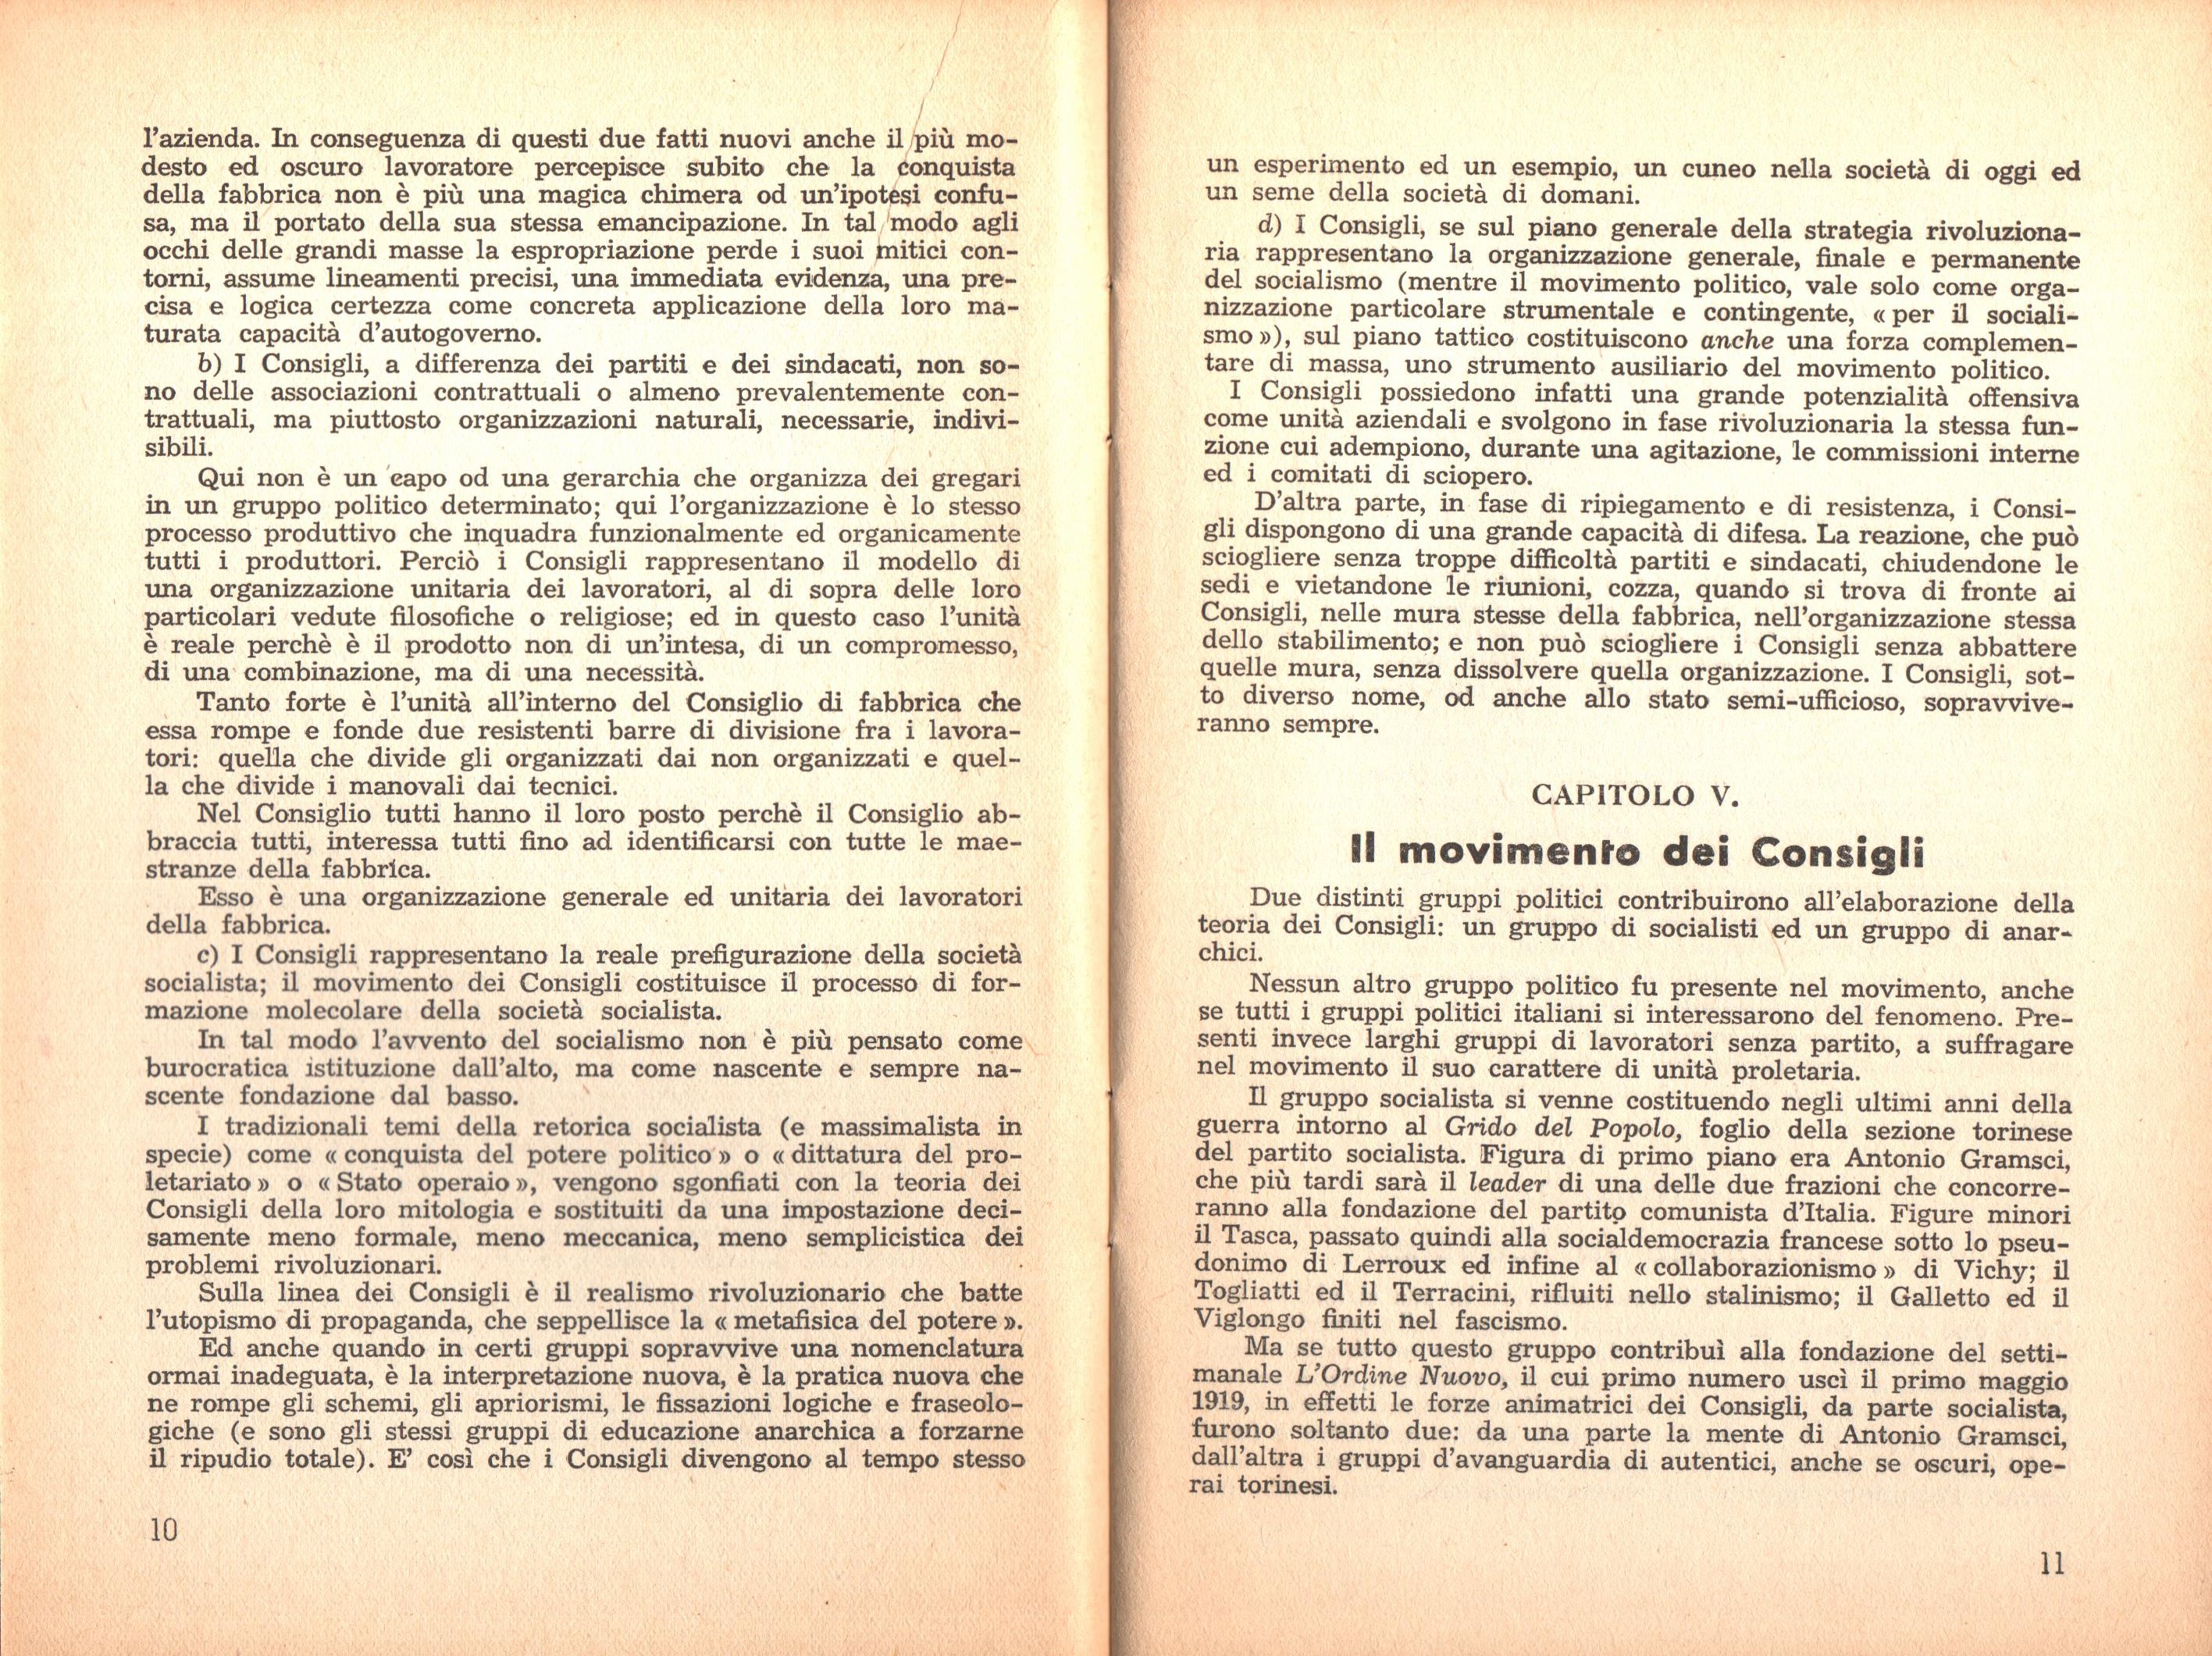 P. C. Masini, Anarchici e comunisti nel movimento dei Consigli a Torino - pag. 7